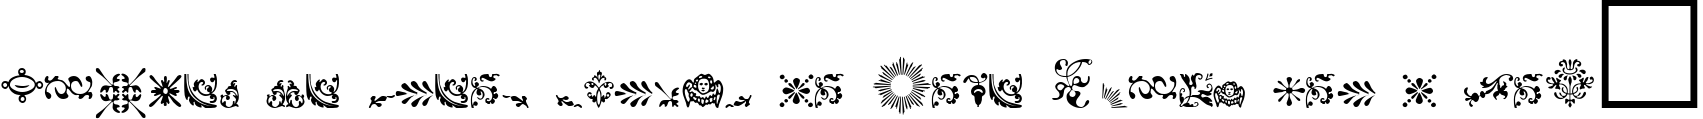 Пример написания шрифтом FleurDesign Dingbats текста на французском